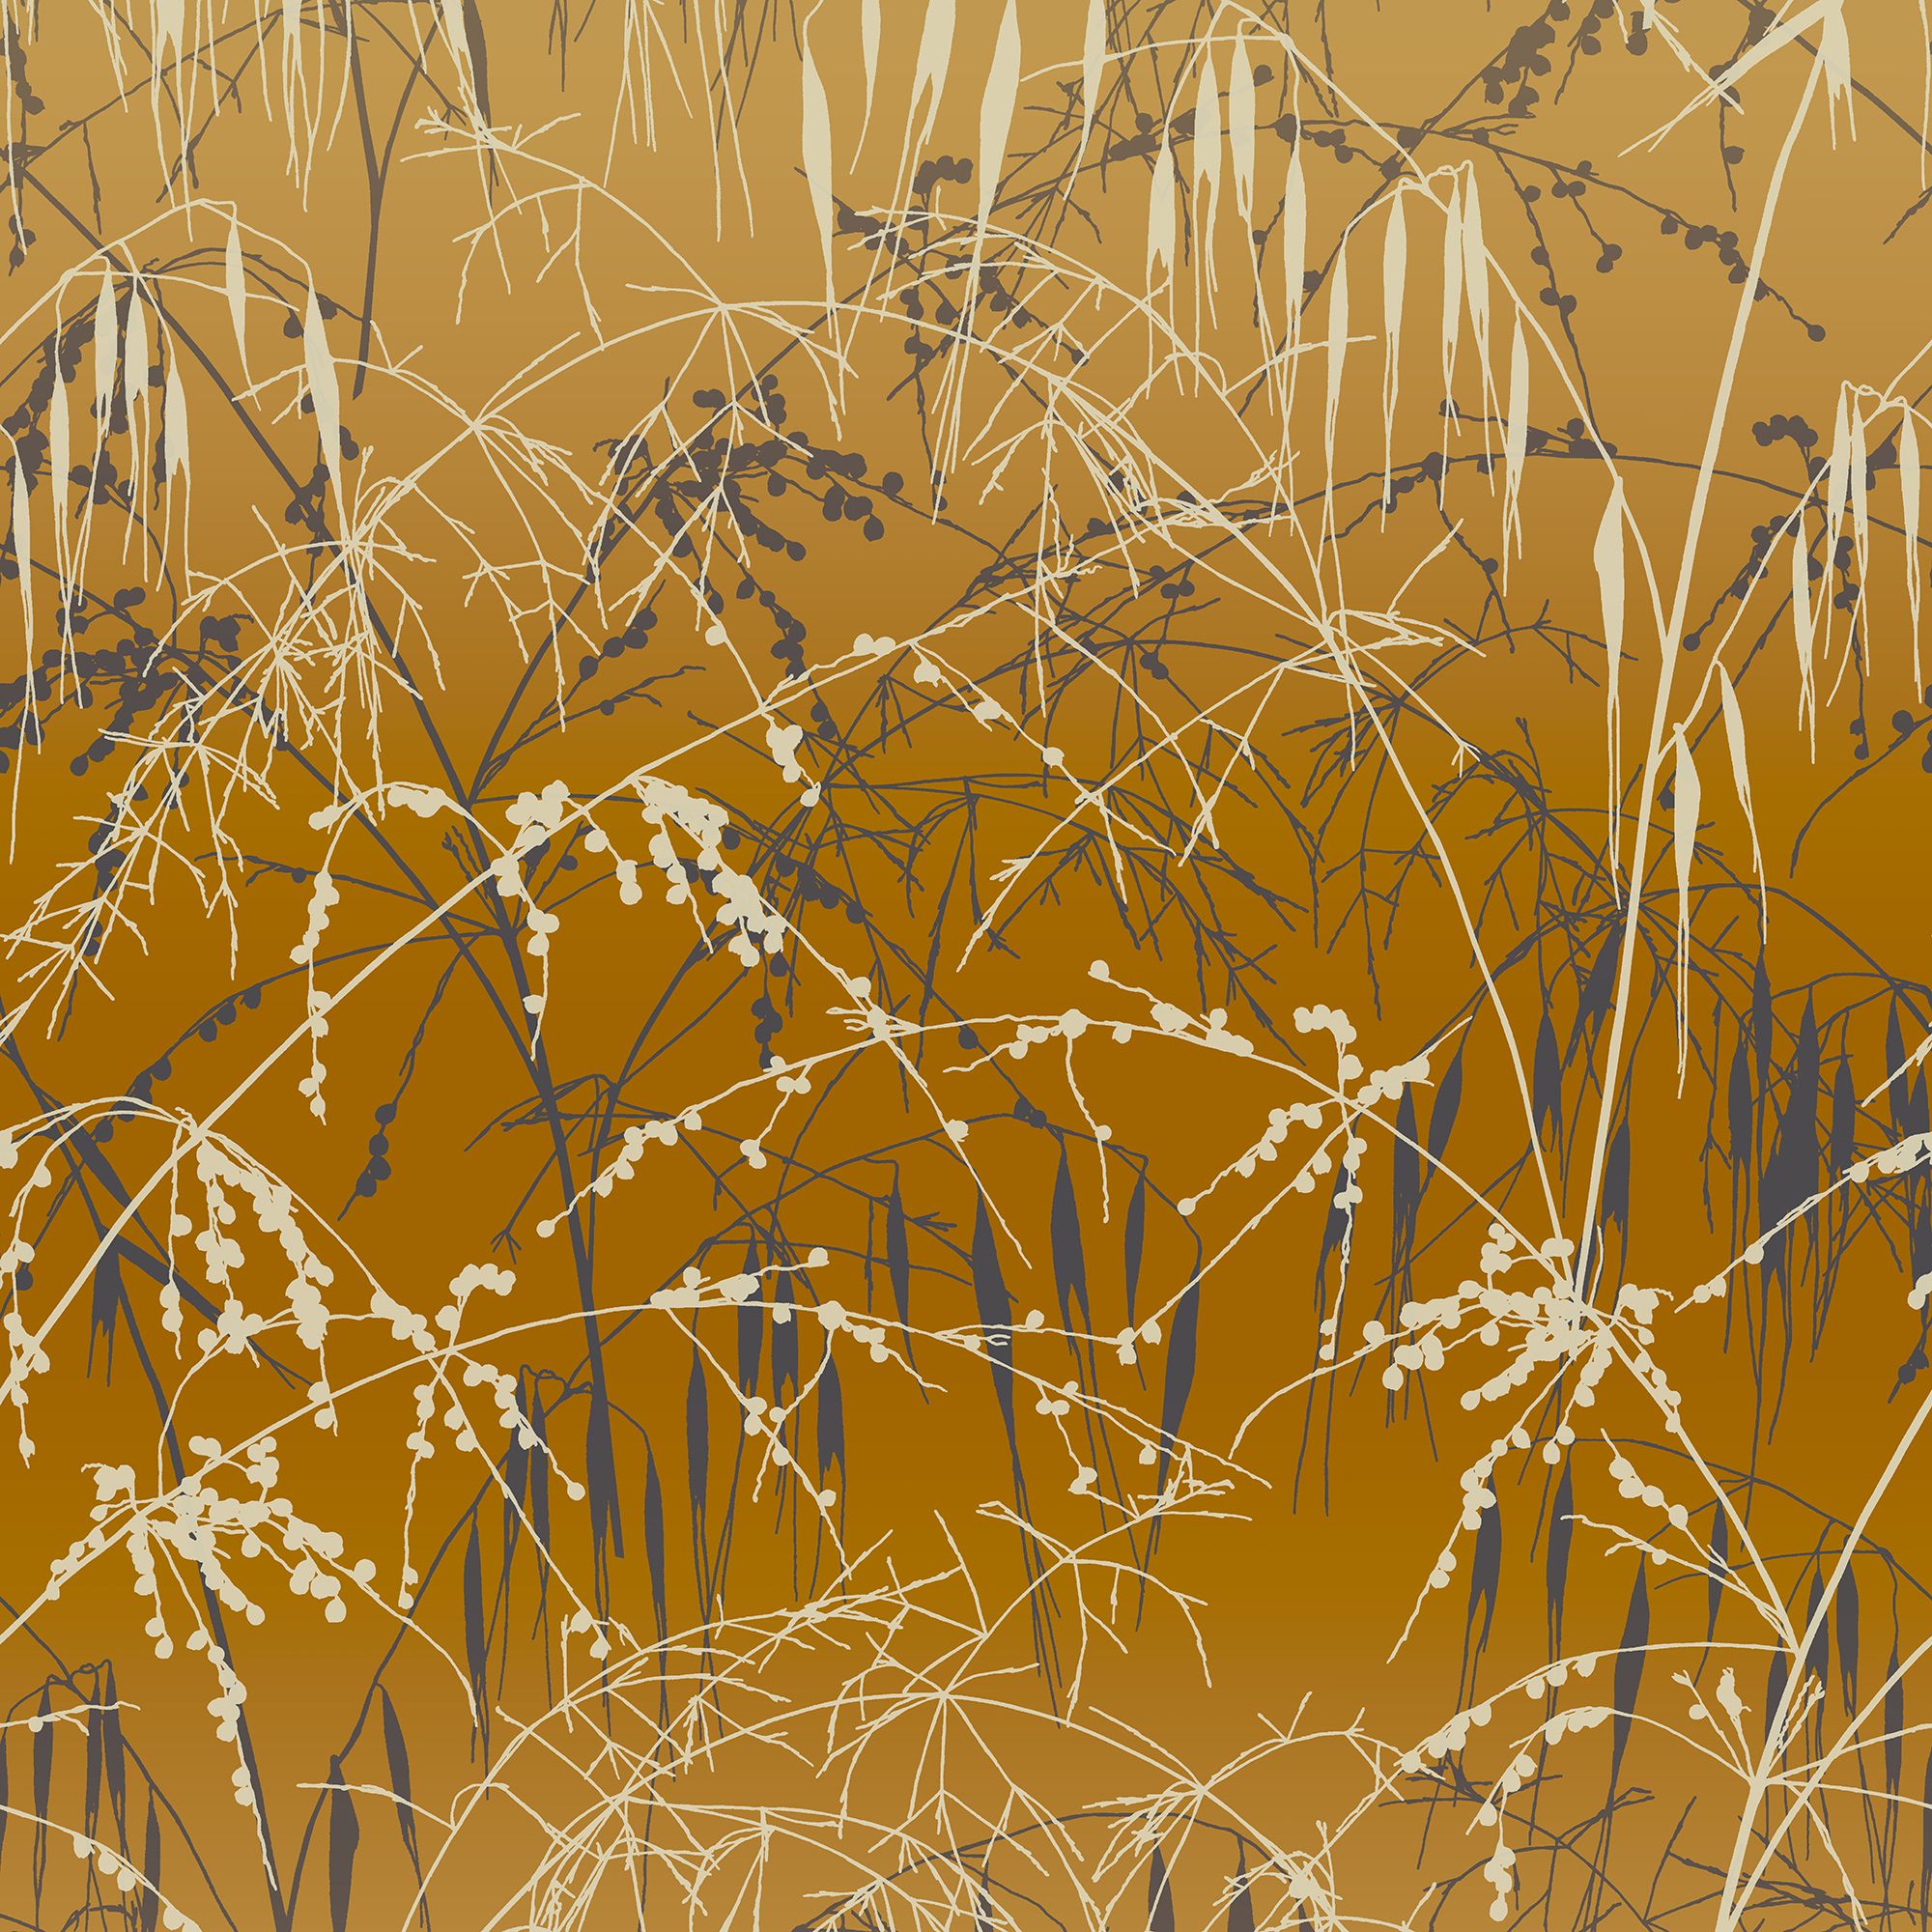 Clarissa Hulse Meadow Grass Yellow Ochre & Gold effect Smooth Wallpaper